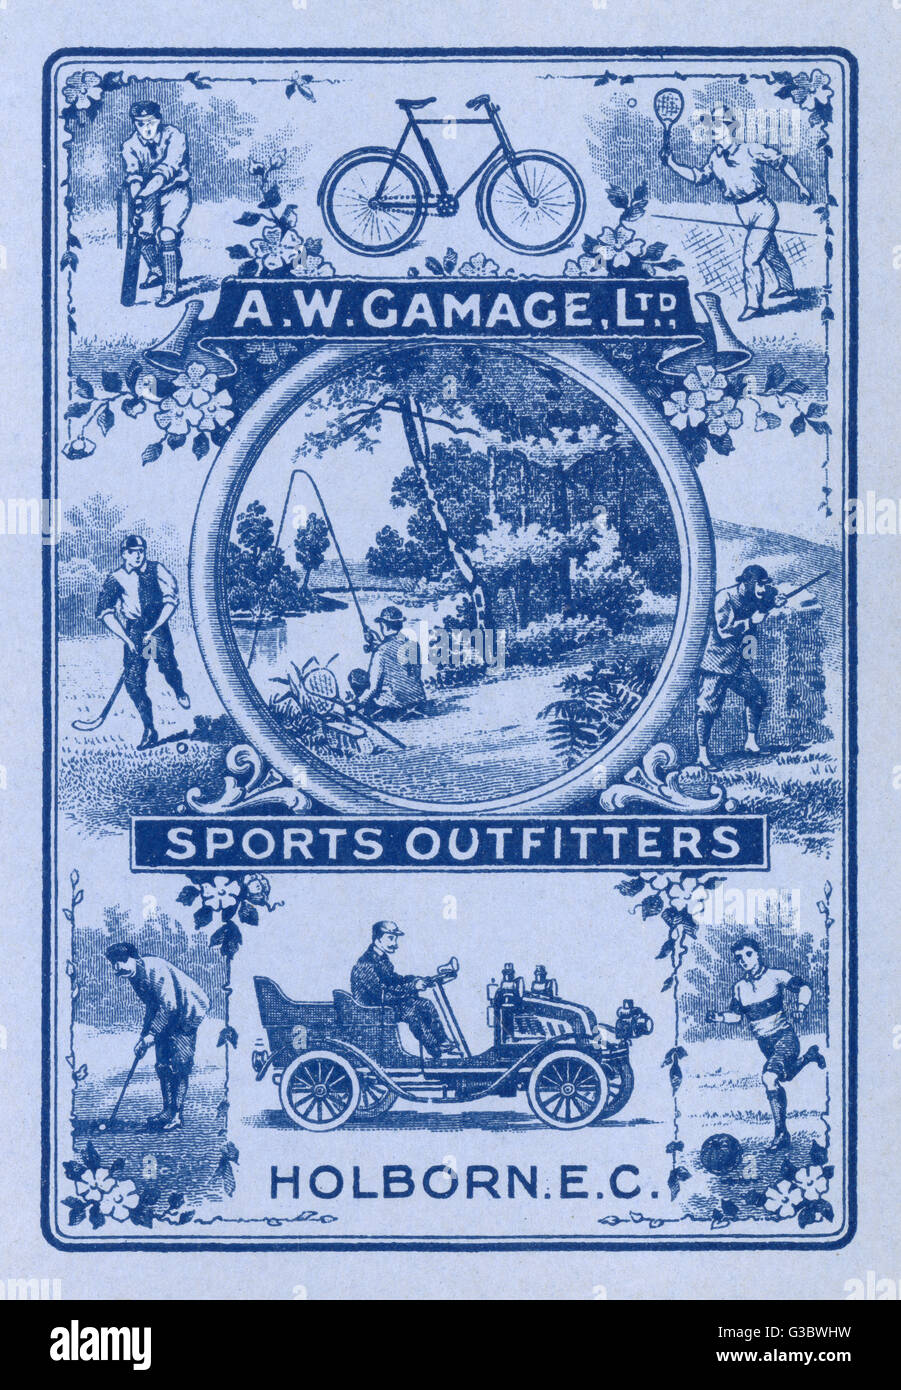 A W Gamage Ltd - Sports Outfitters de Holborn, Londres Banque D'Images